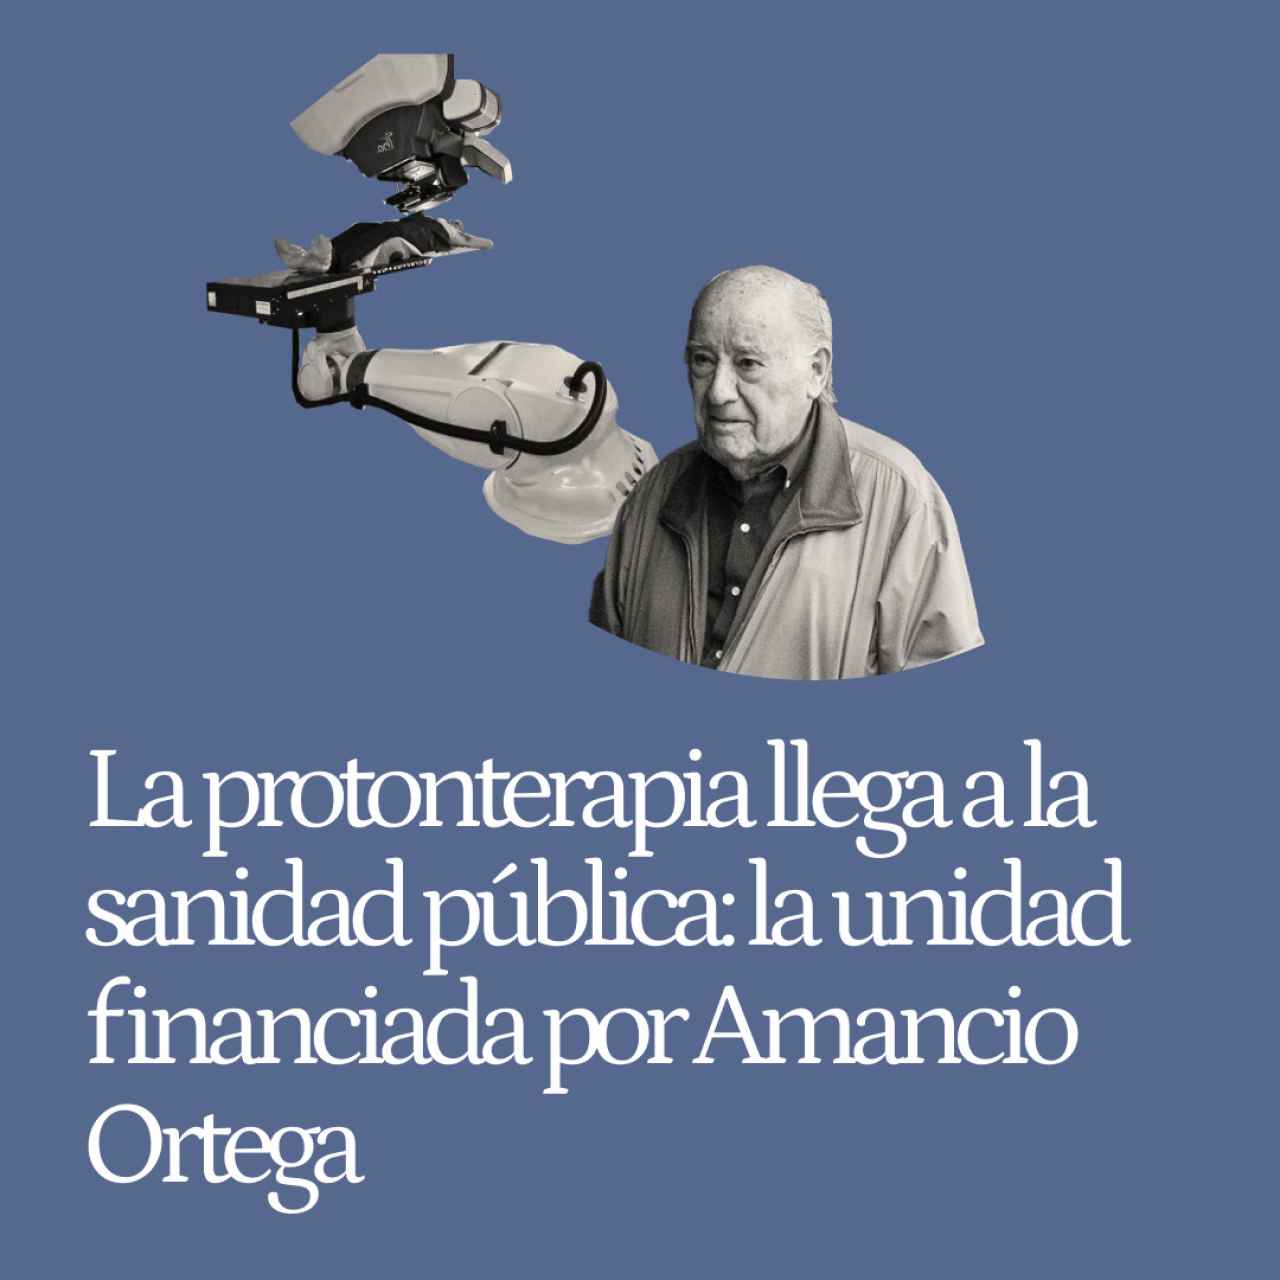 La protonterapia llega a la sanidad pública: así será la primera unidad financiada por Amancio Ortega